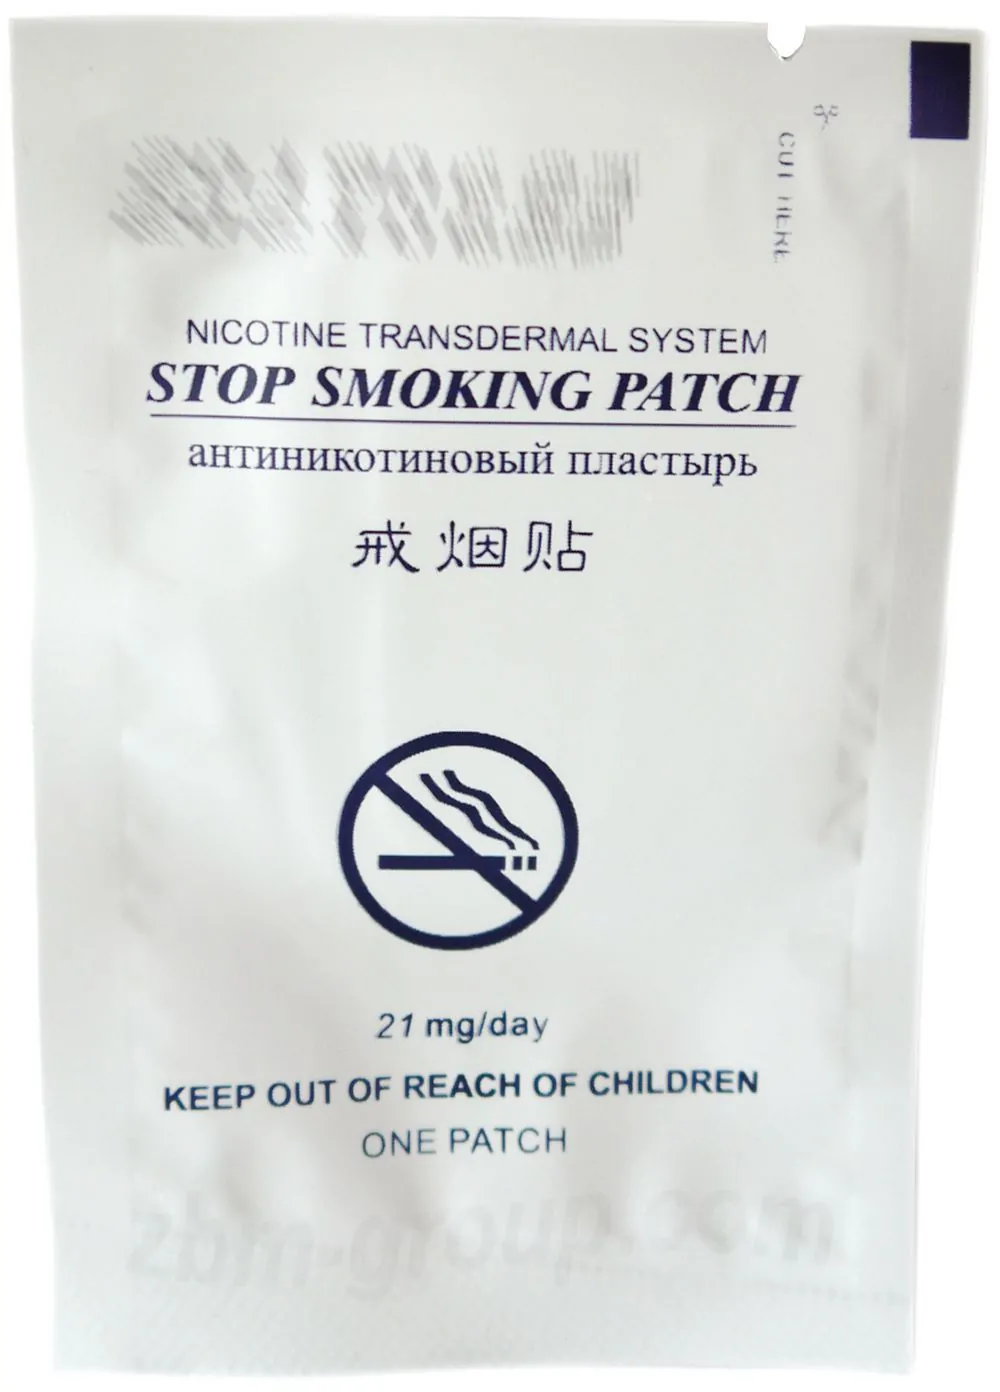 Упаковка и характеристики Никотинового пластыря от курения